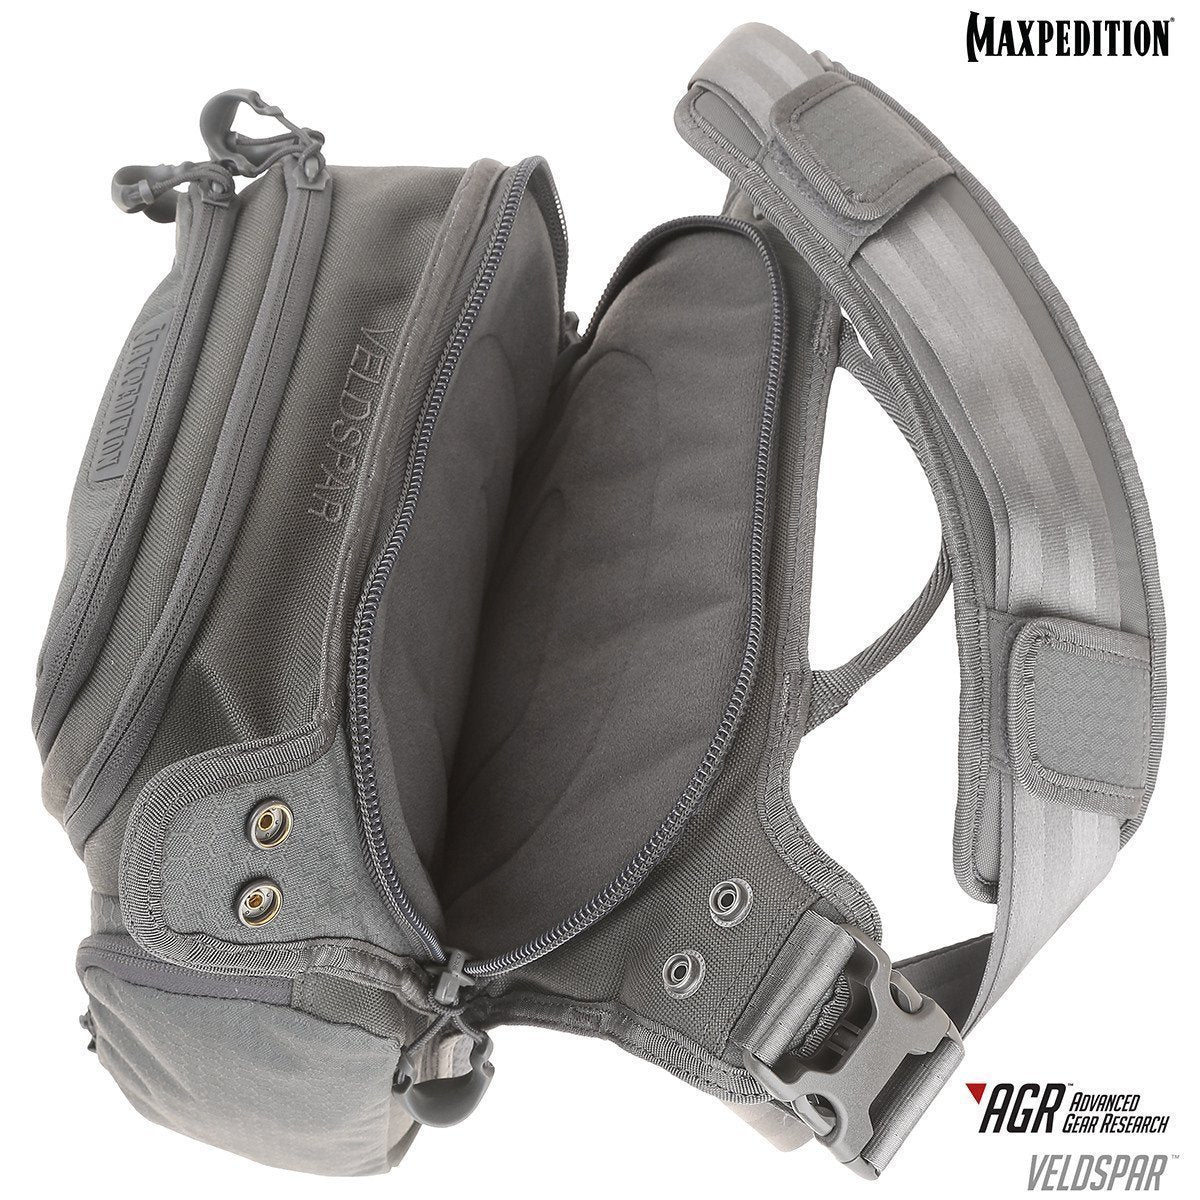 Maxpedition Veldspar Crossbody Shoulder Bag 8L Tactical Distributors Ltd New Zealand